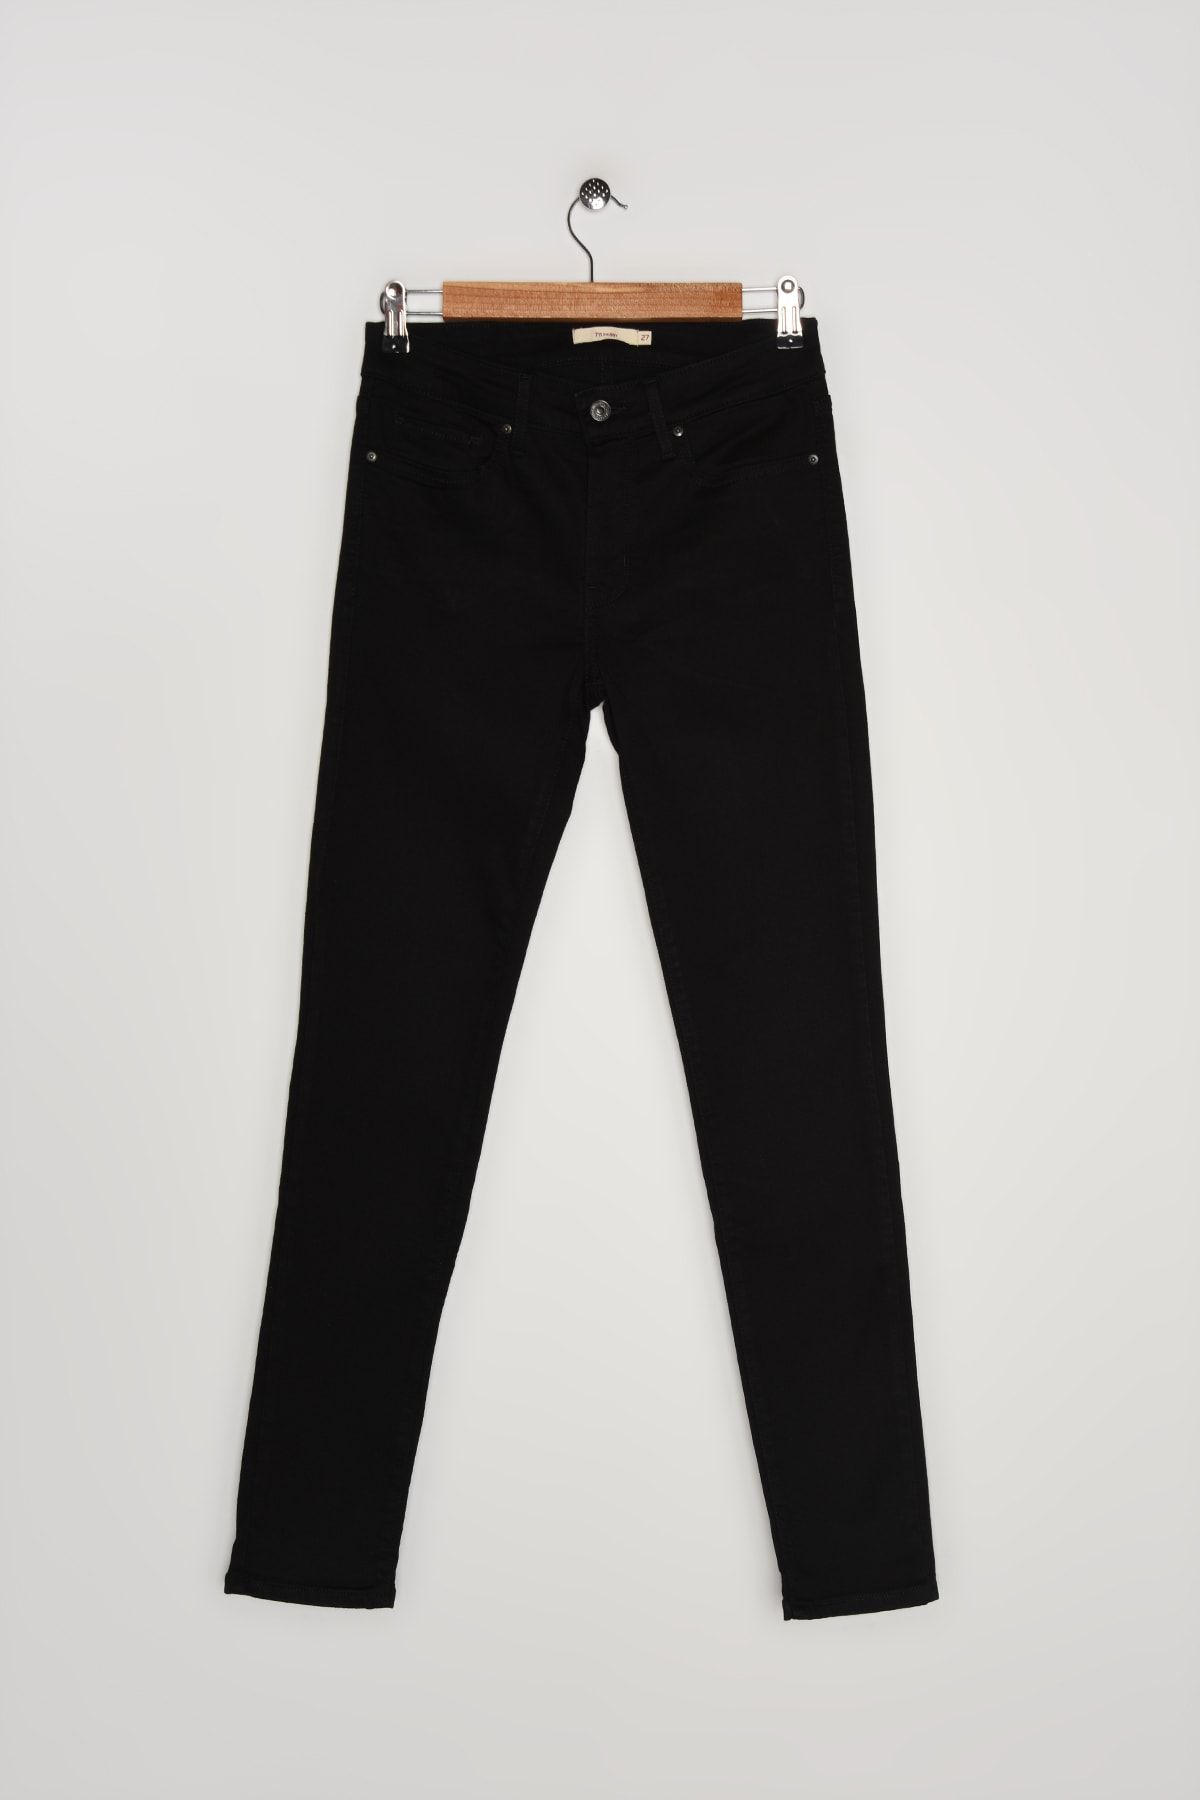 Levi's Kadın 711 Skınny Lse__Soft Black Jeans 18881-0618